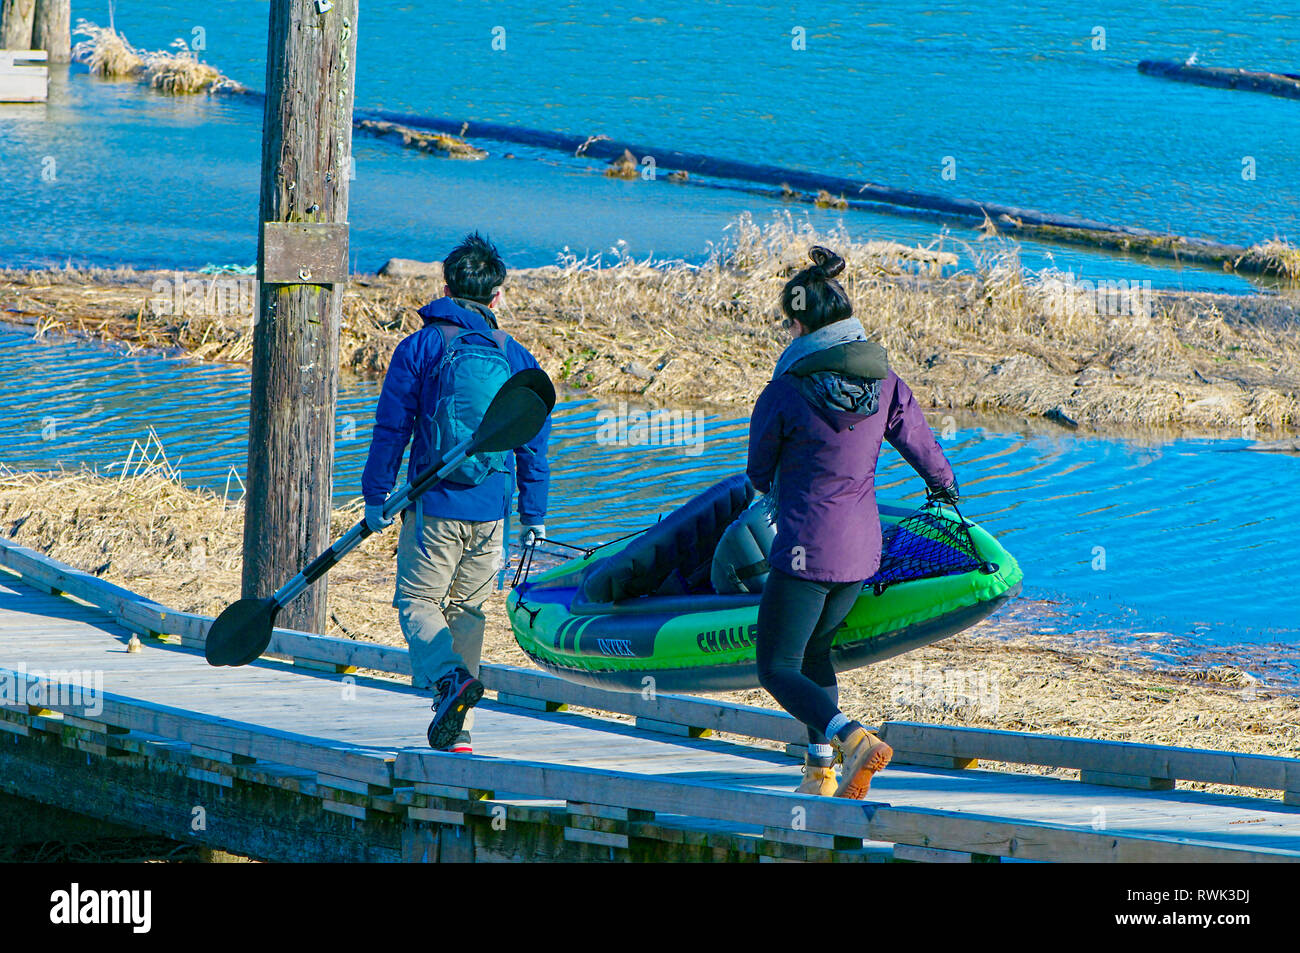 Giovani asiatici matura portante un kayak gonfiabili lungo una rampa di legno. Concessione si restringe il Parco Regionale, Pitt Prati, British Columbia, Canada Foto Stock